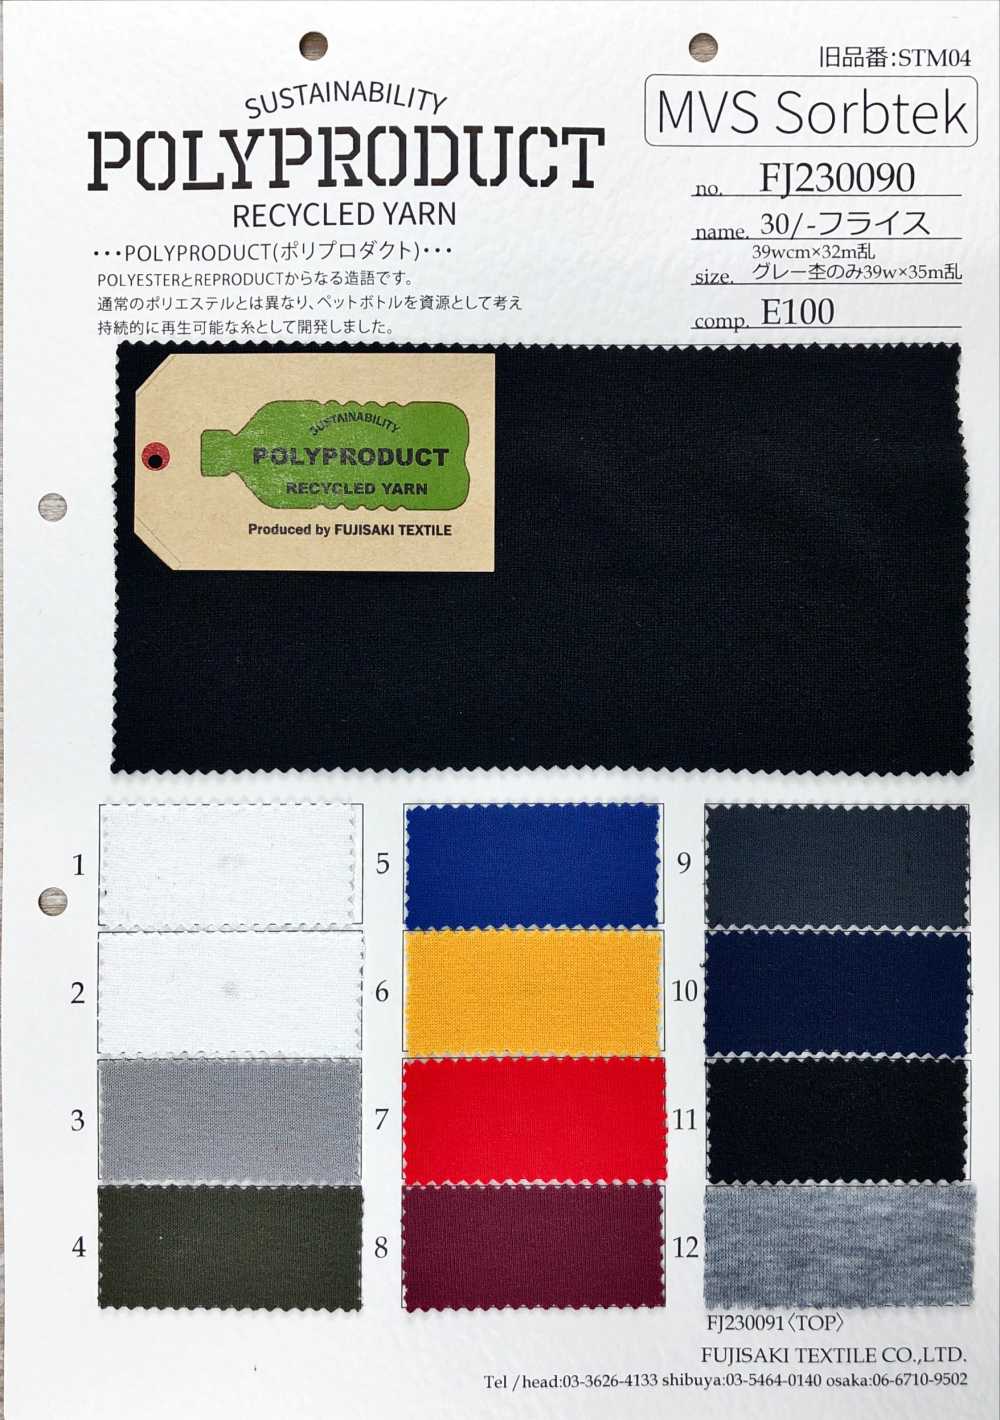 FJ230090 30 / Costilla Circular[Fabrica Textil] Fujisaki Textile